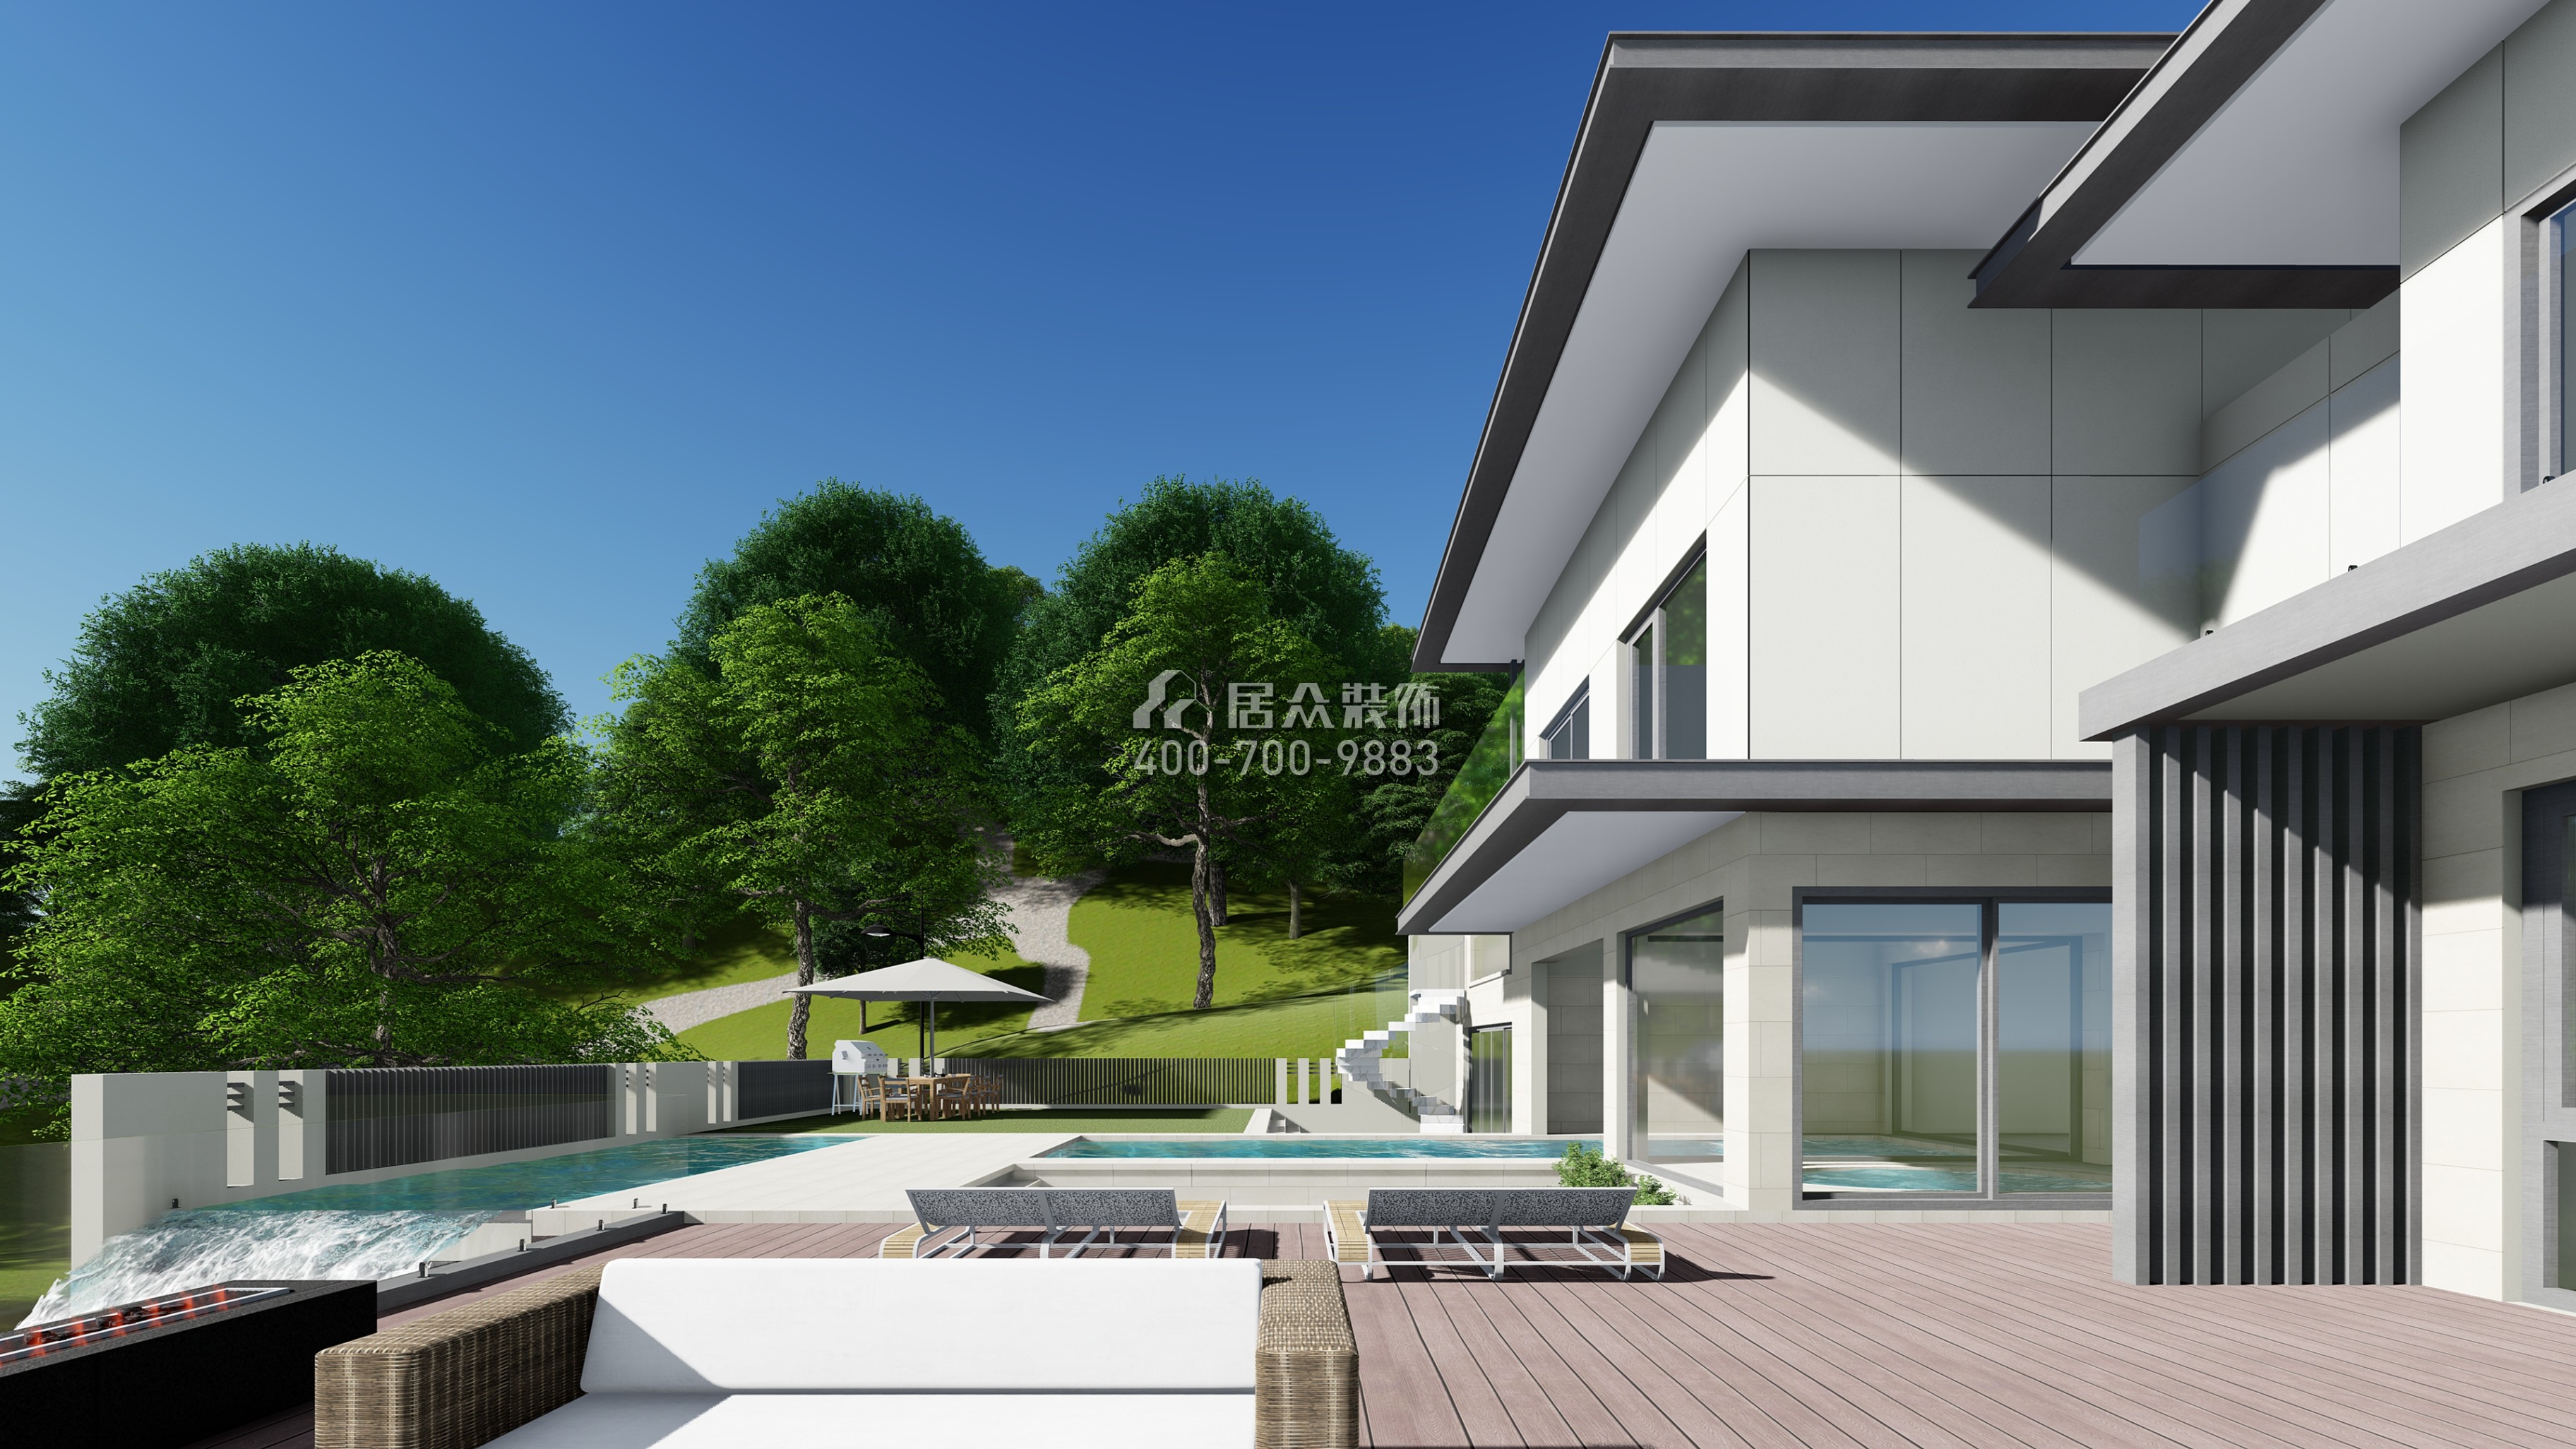 湘江壹號1200平方米現代簡約風格別墅戶型裝修效果圖